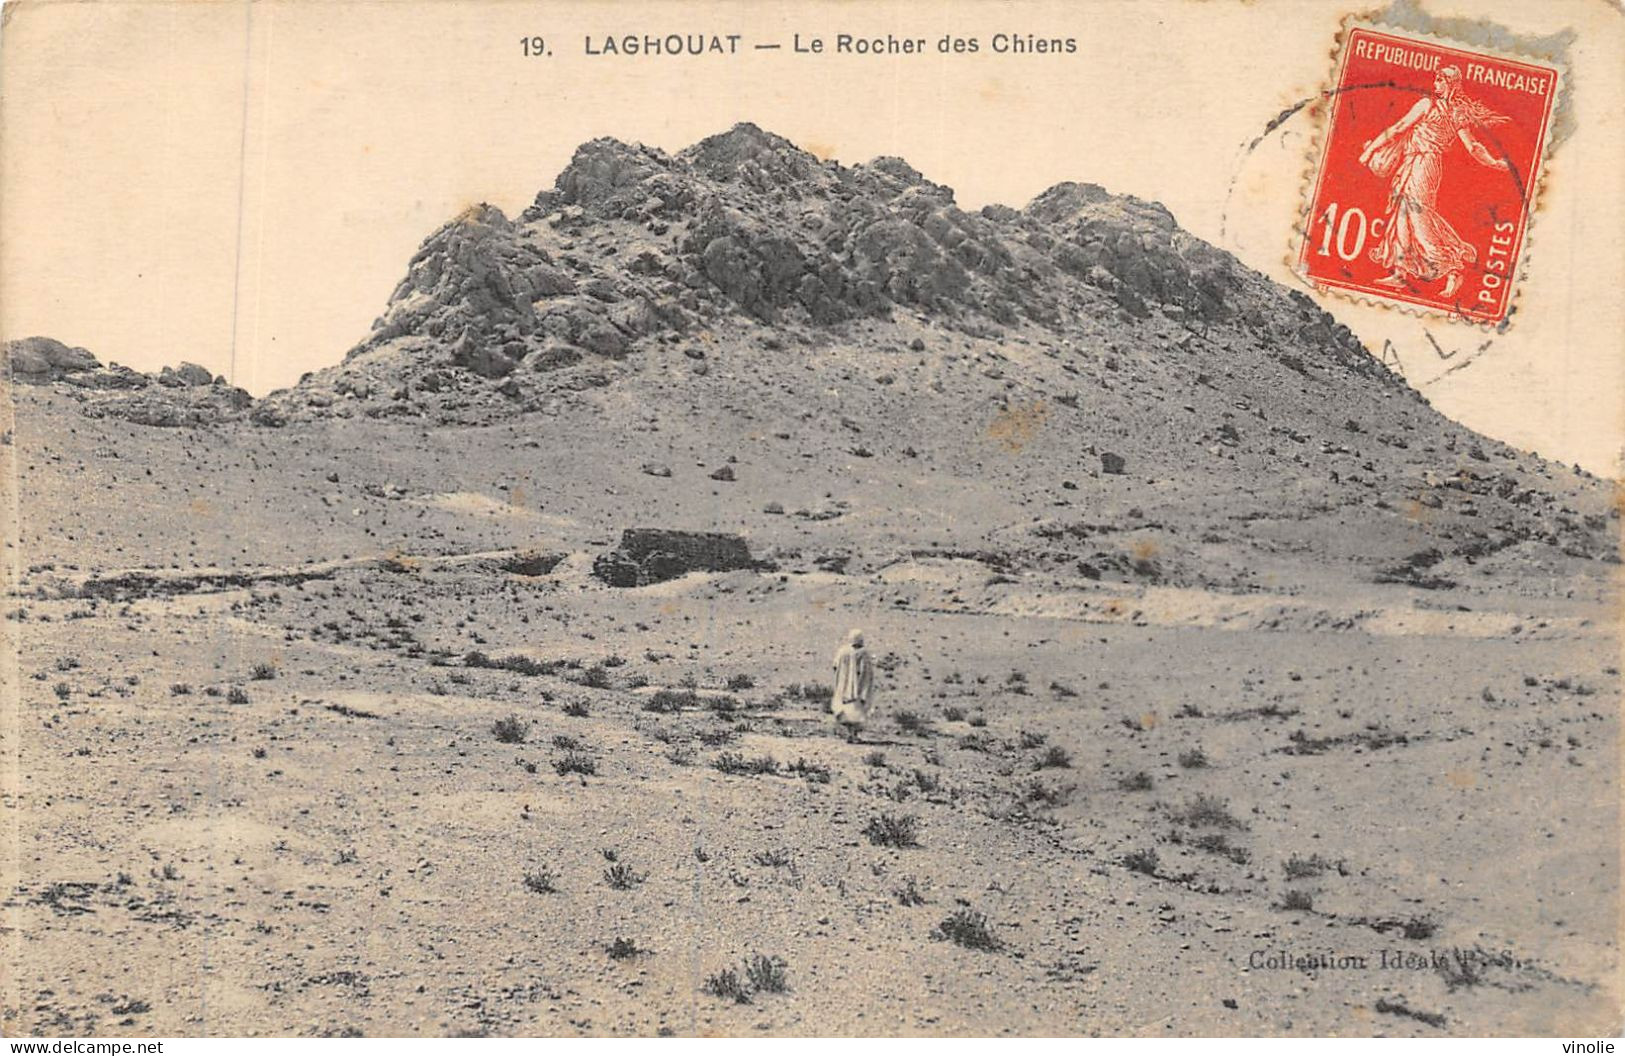 P-24-Mi-Is-2376 : LAGHOUAT. LE ROCHER DES CHIENS - Laghouat